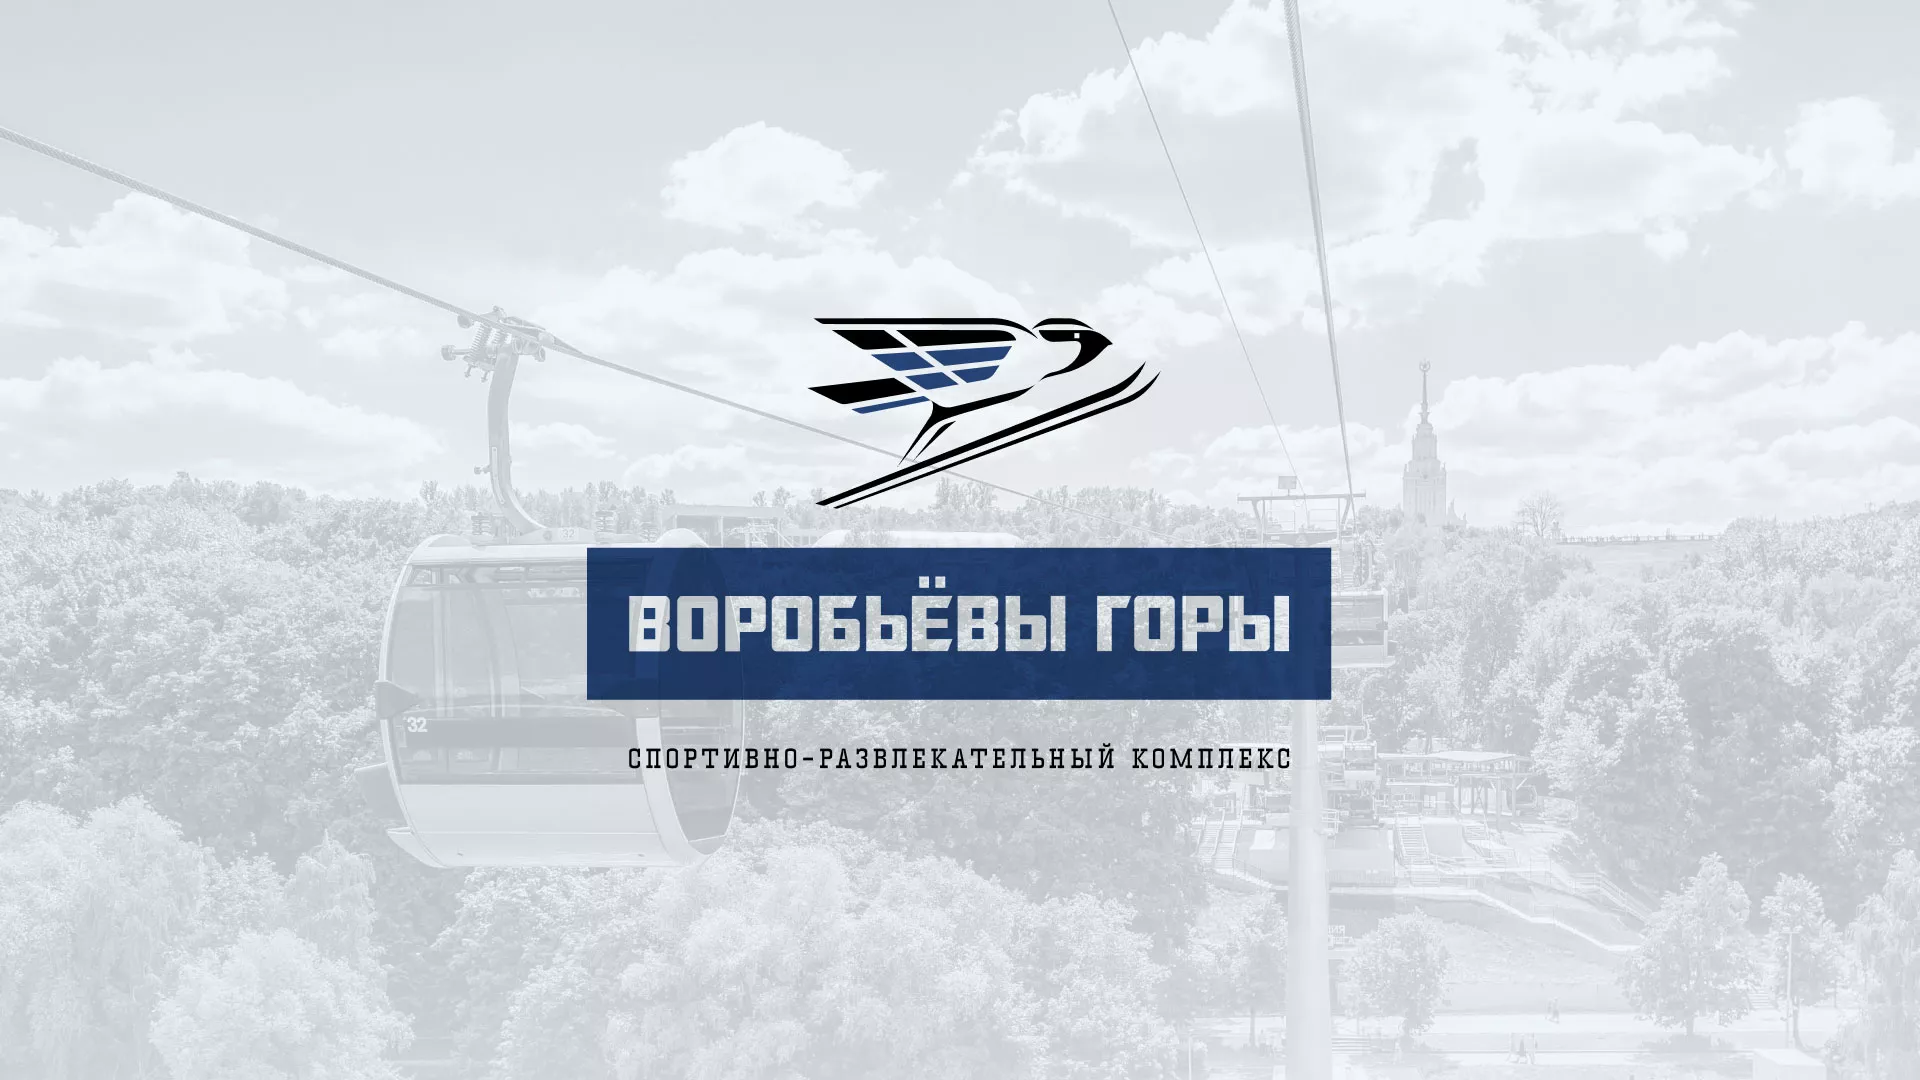 Разработка сайта в Валуйках для спортивно-развлекательного комплекса «Воробьёвы горы»